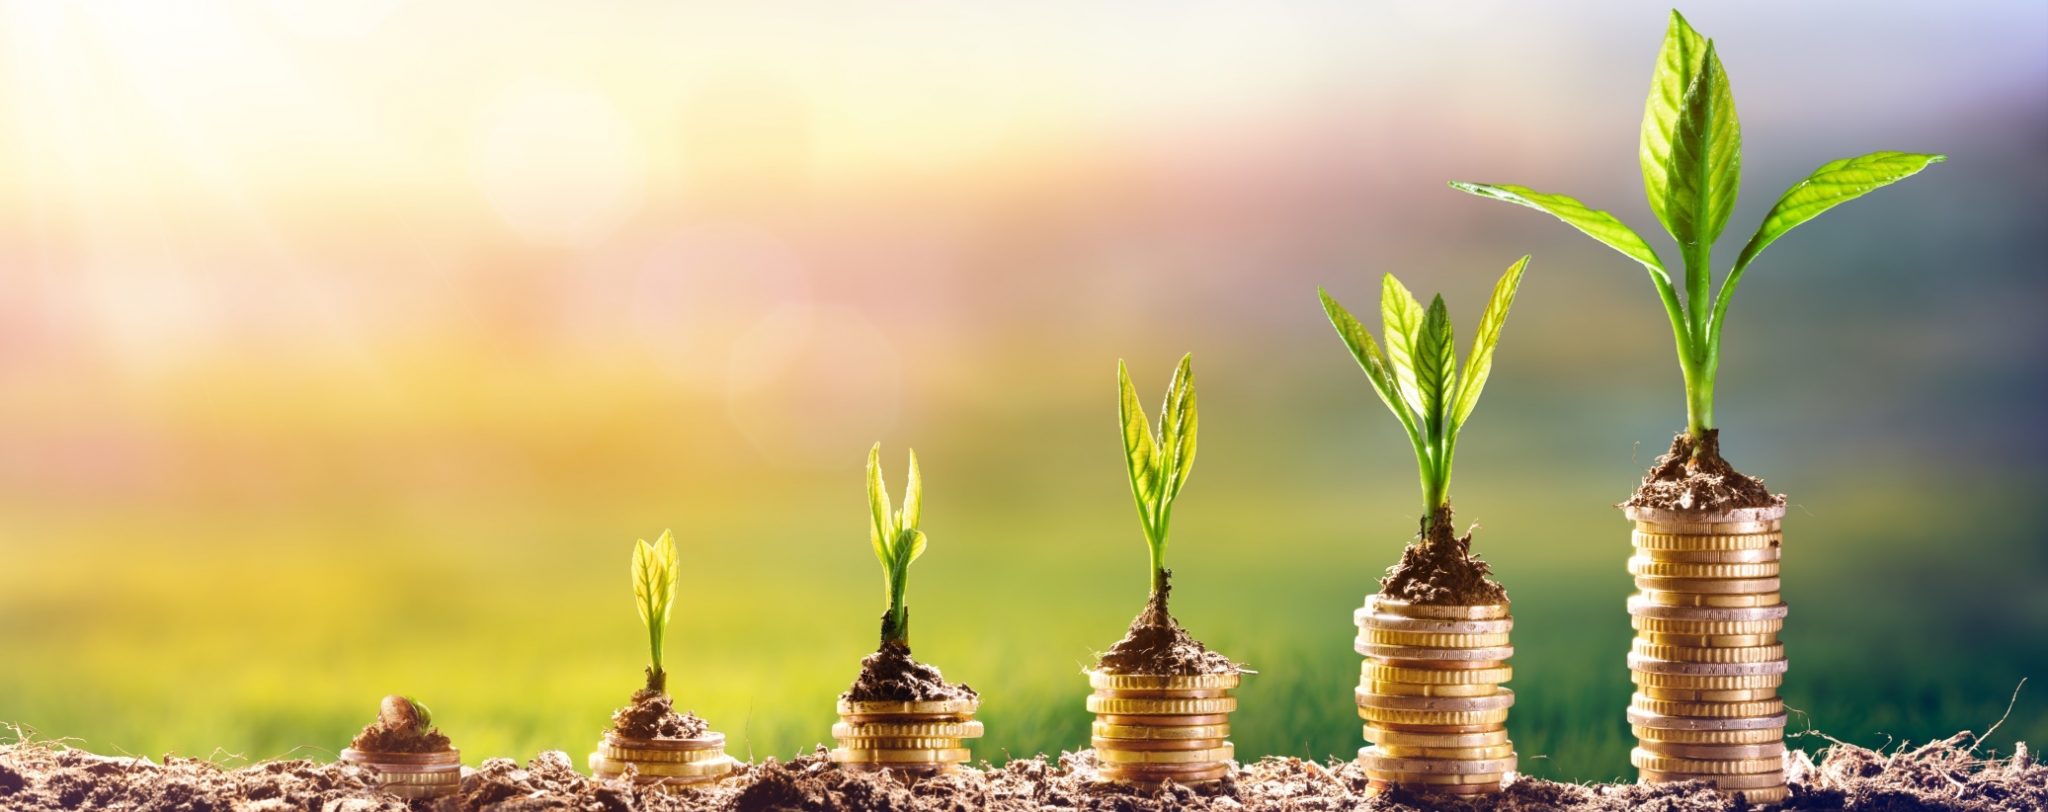 Pflanze wächst auf Geldmünzen - Beitrag Nachhaltiger Anlagemarkt